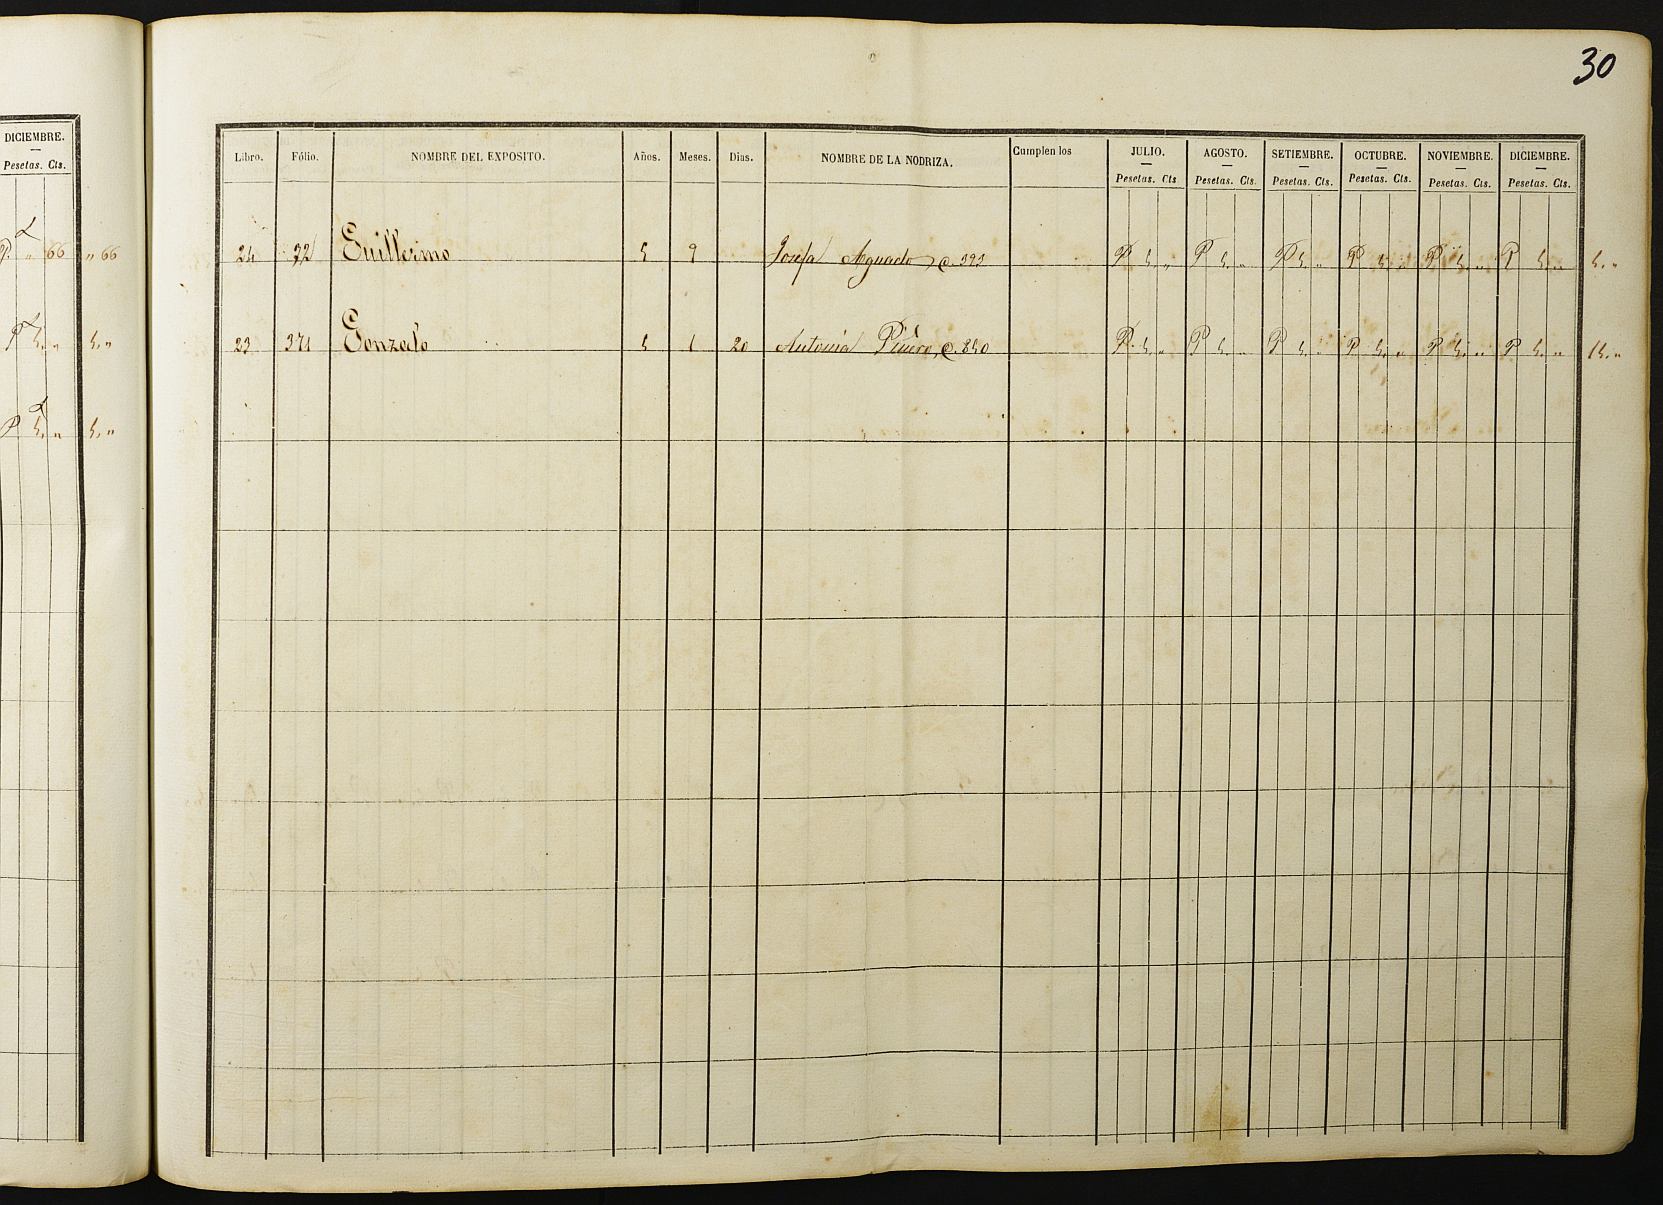 Registro de entrada, movimiento y salida de niños de la Casa Provincial de Expósitos y Maternidad. Primer semestre del año económico de 1875-1876